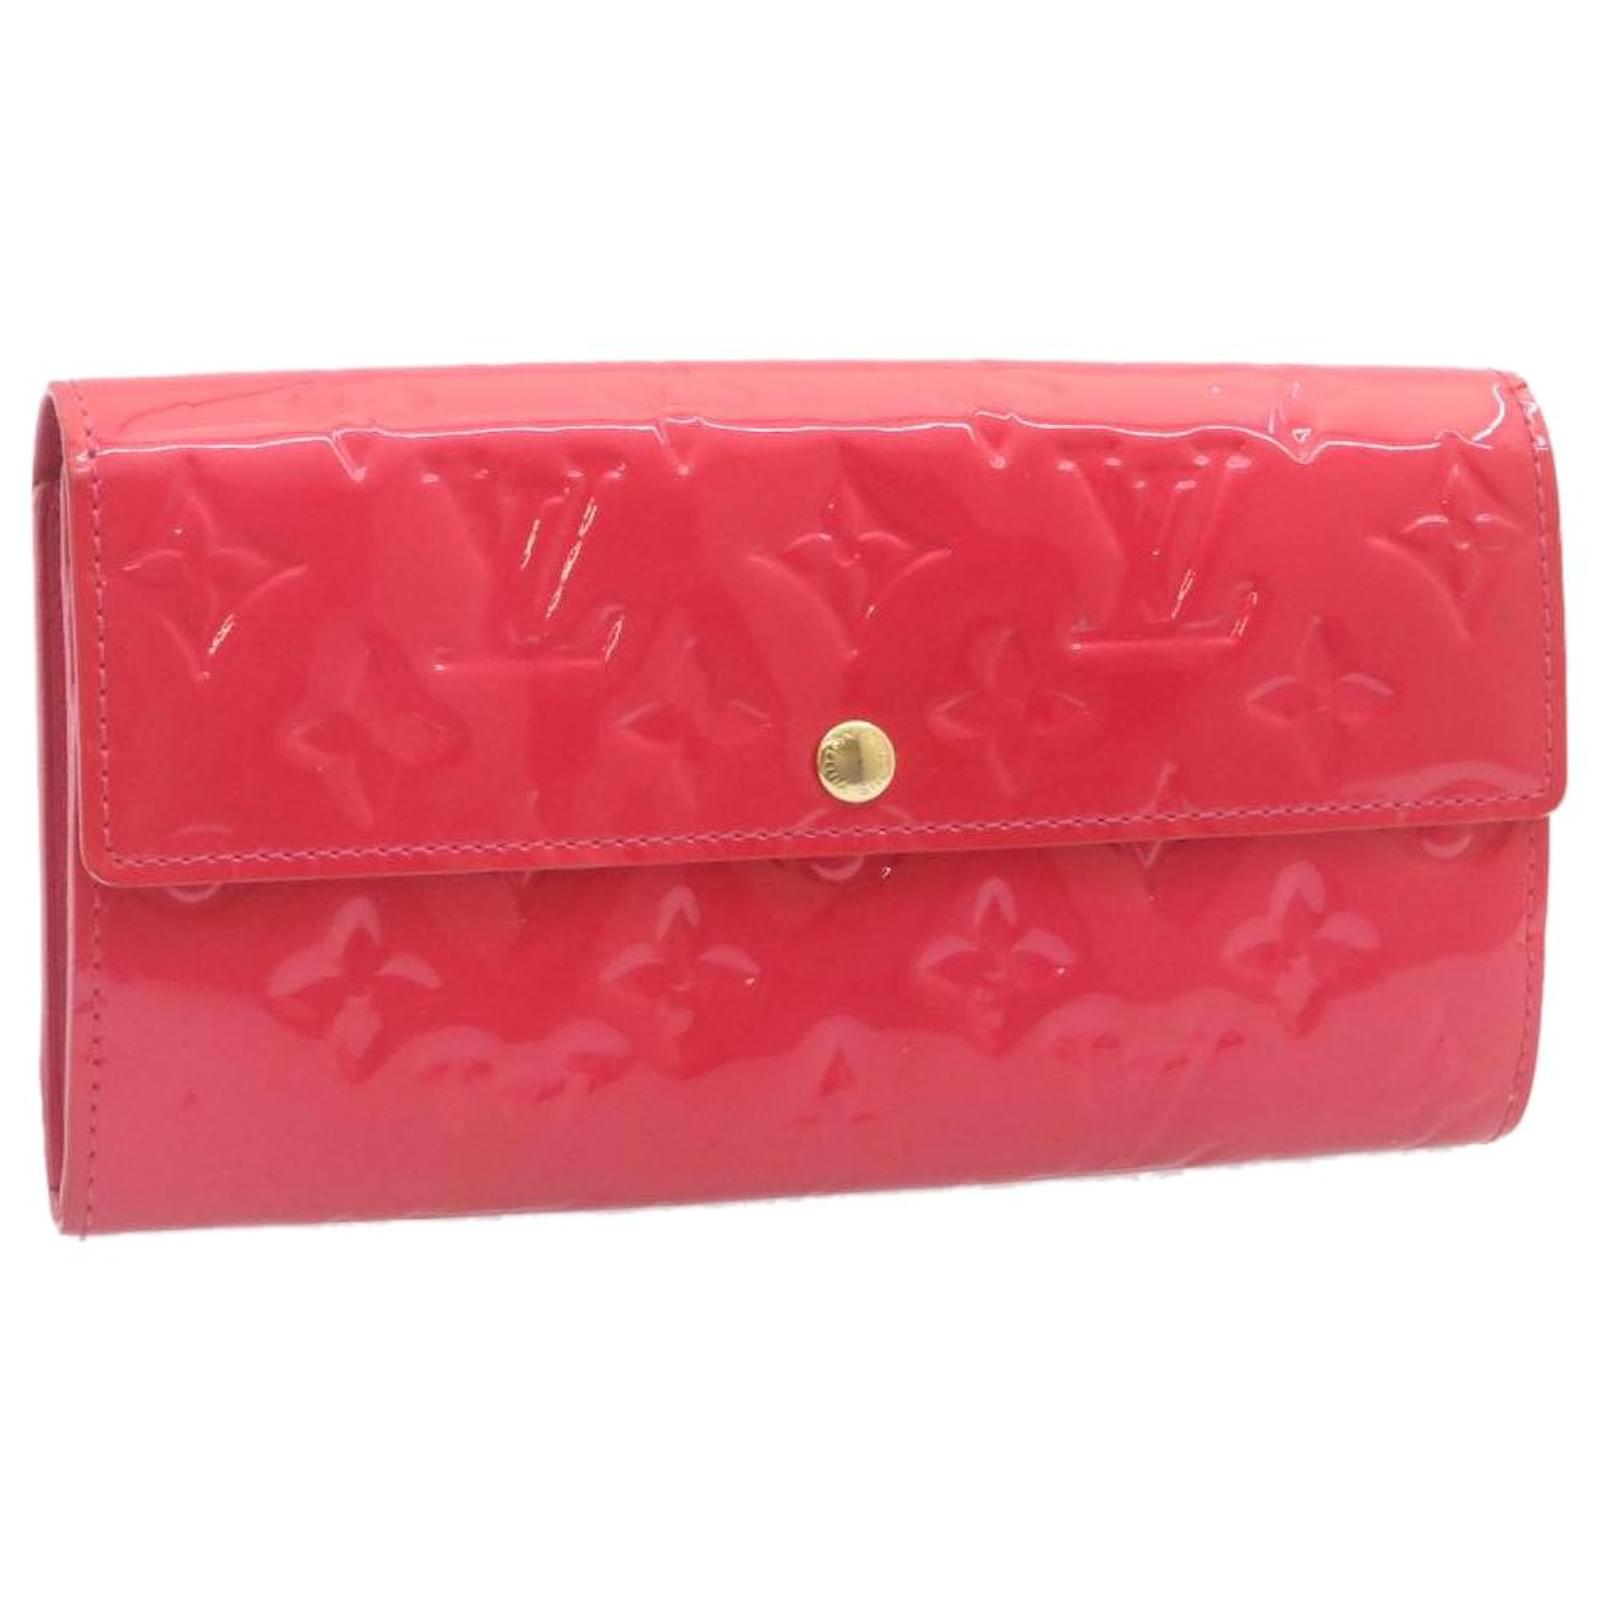 vuitton sarah wallet pink